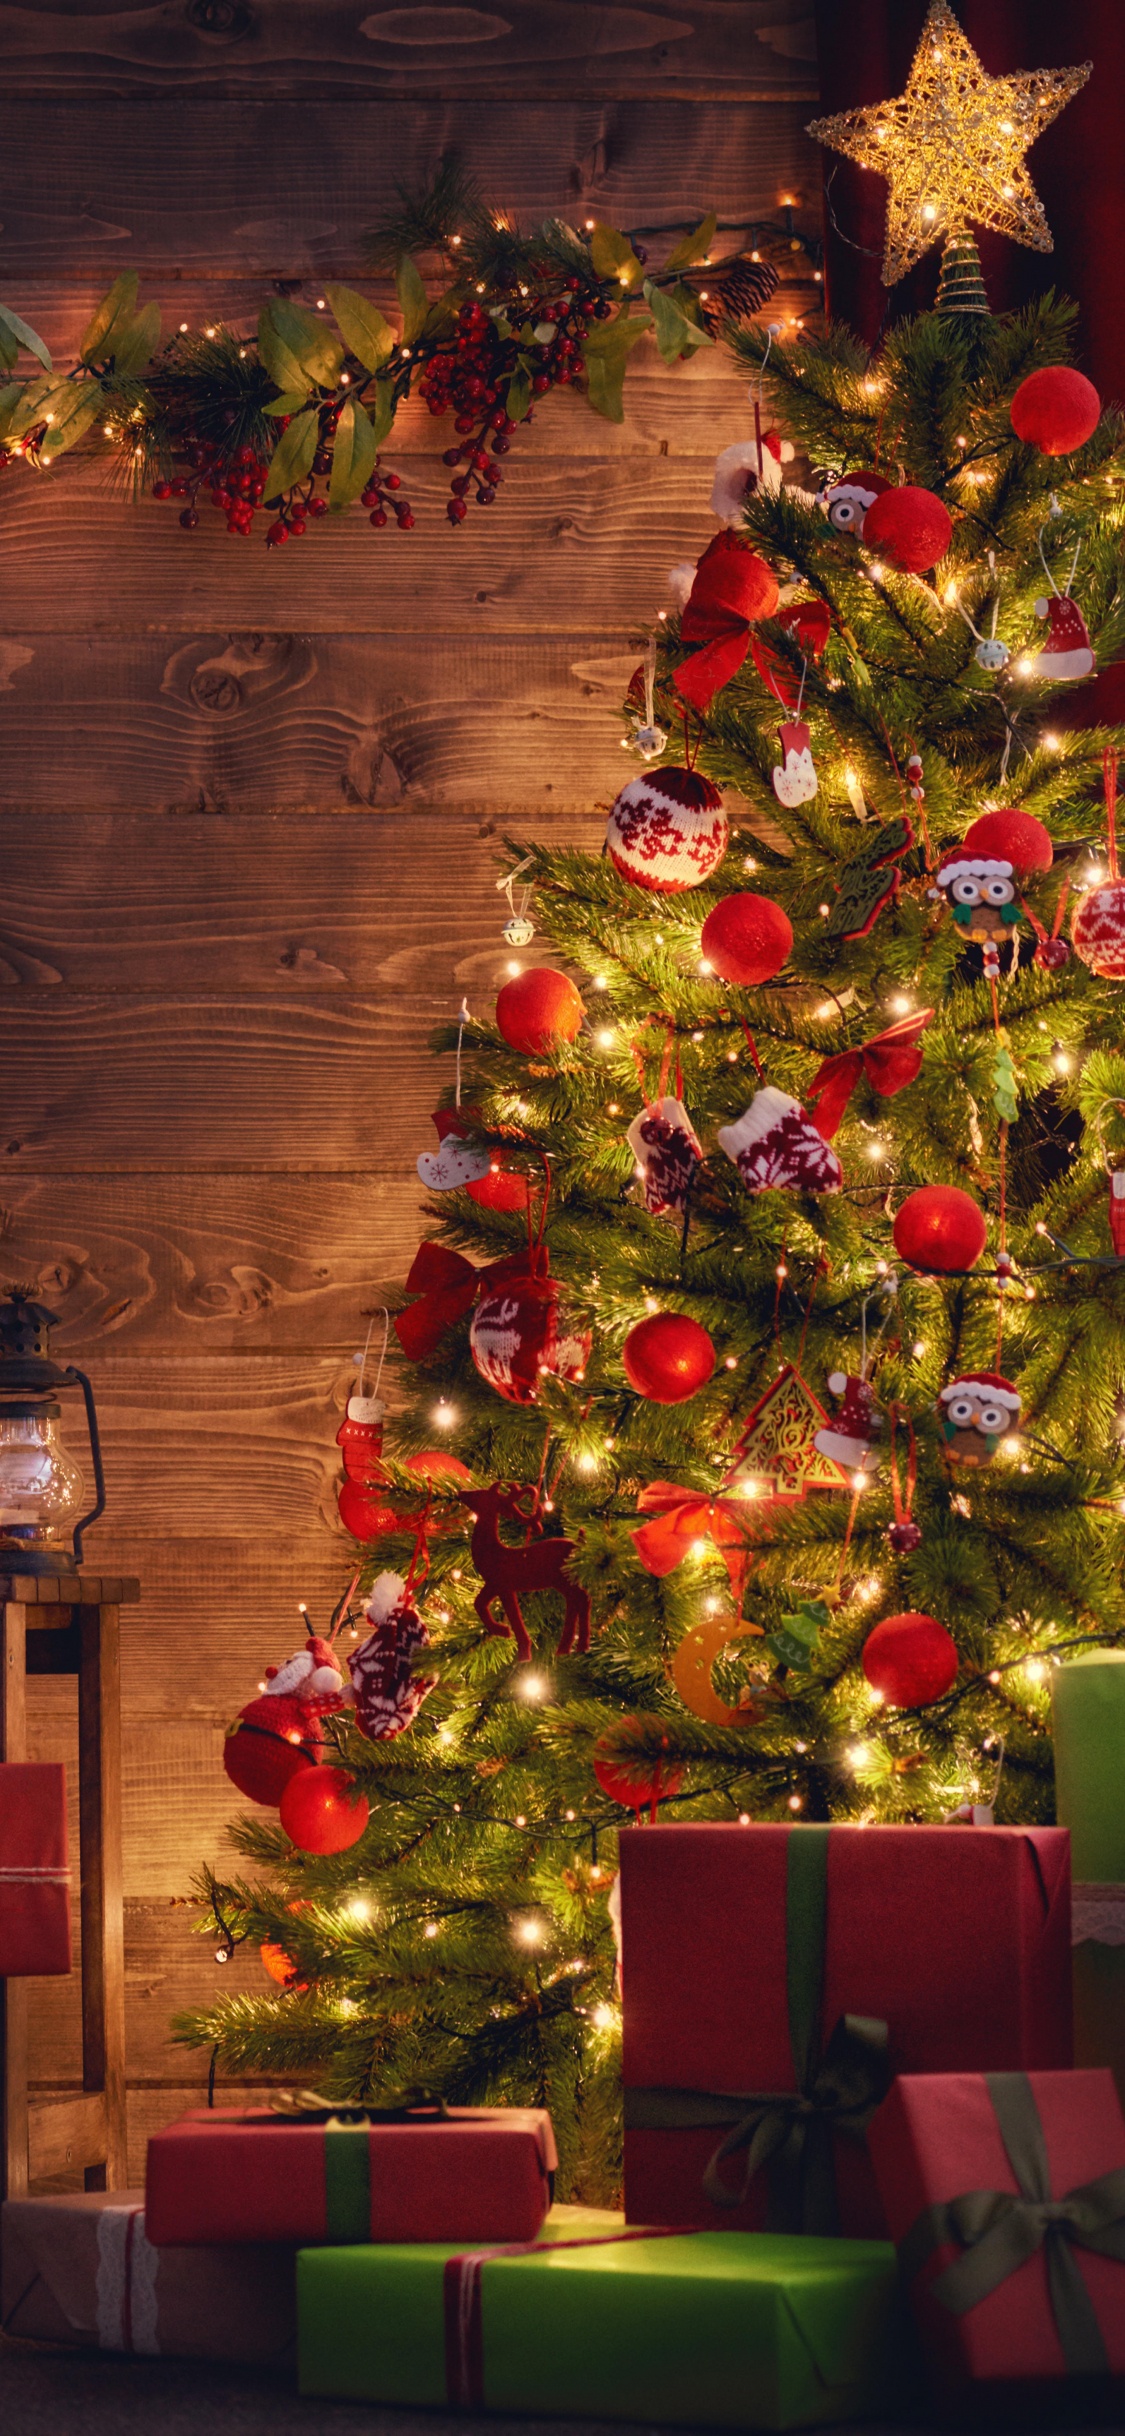 El Día De Navidad, Decoración de la Navidad, Navidad, Luces de Navidad, Calendario de Adviento de Navidad de Madera. Wallpaper in 1125x2436 Resolution